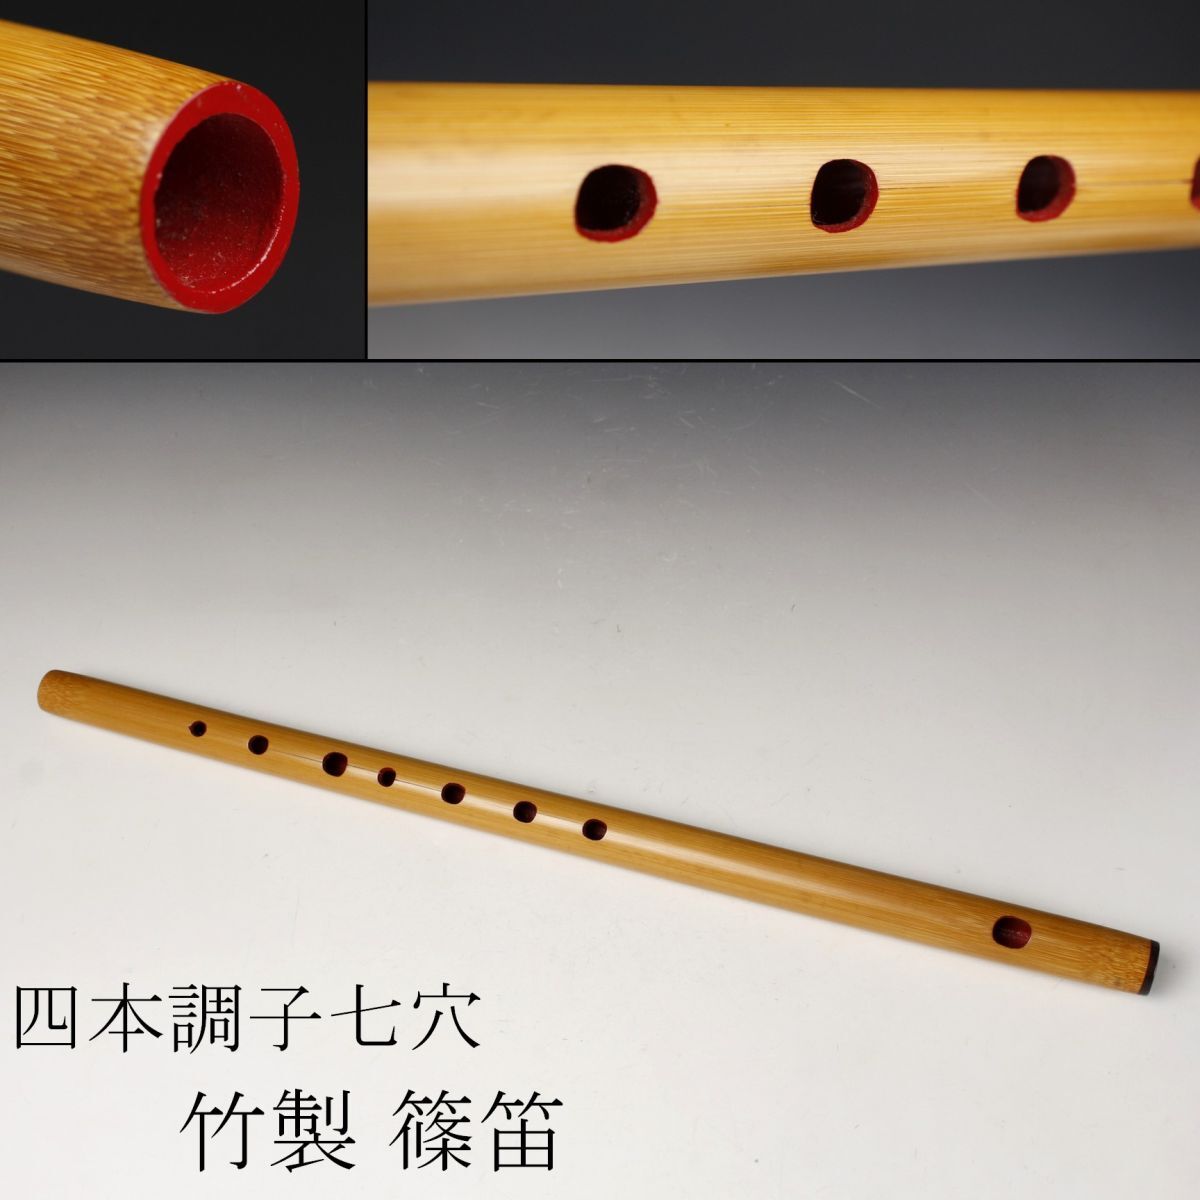 【LIG】篠笛 竹製 全長47.3㎝ 四本調子 七穴 和楽器 ⑦ [-RE]23.6